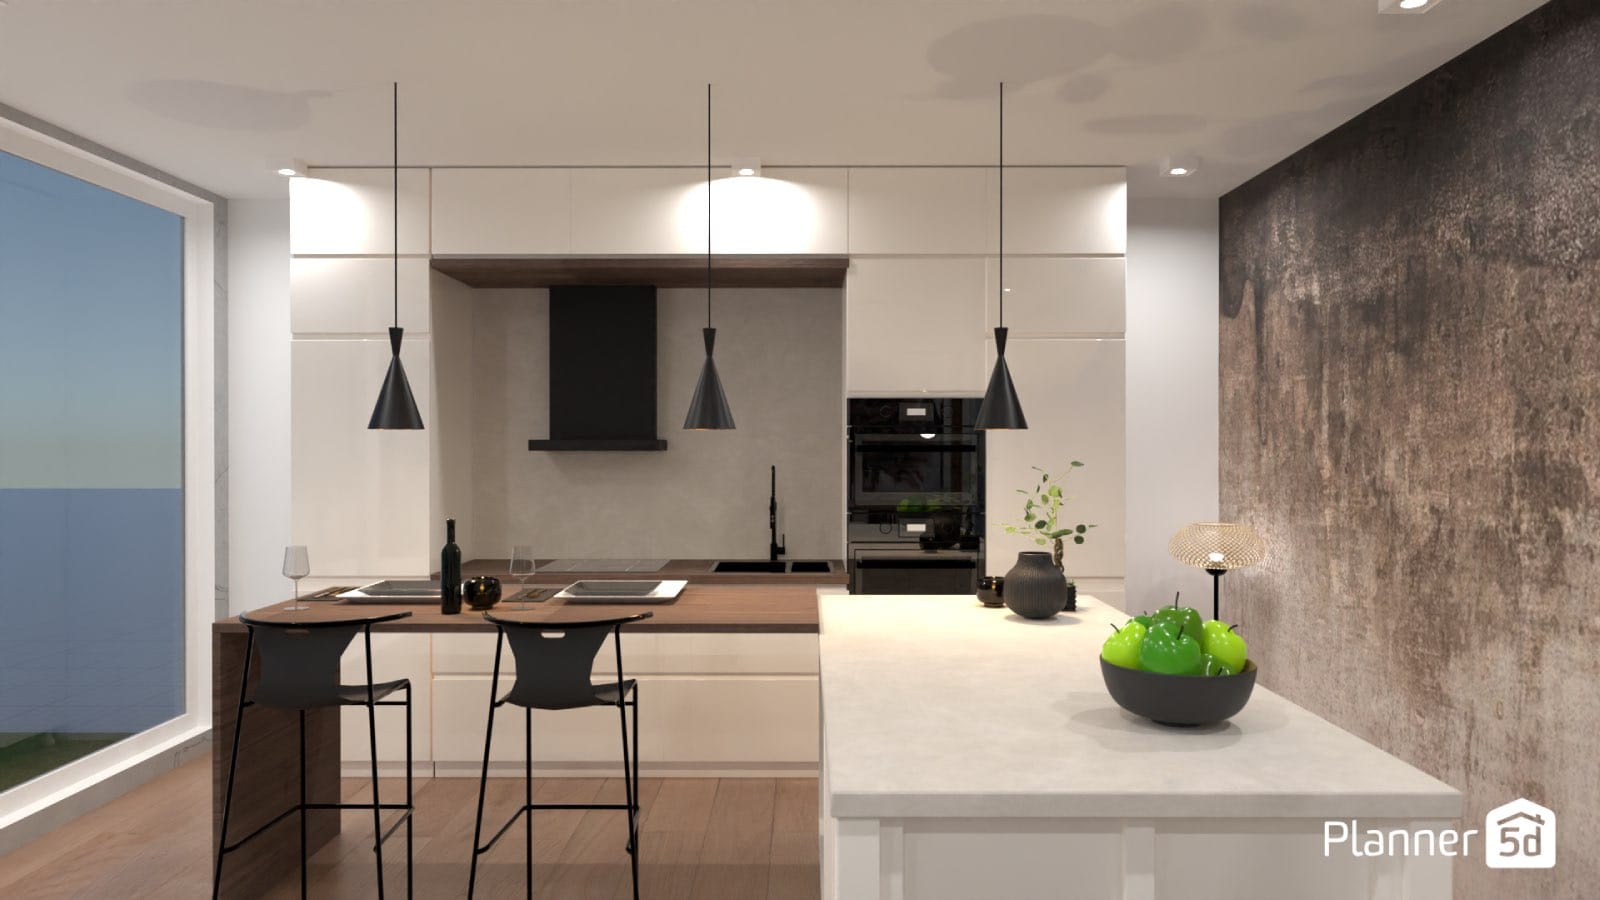 cocina de diseño minimalista blanca, render planner 5d